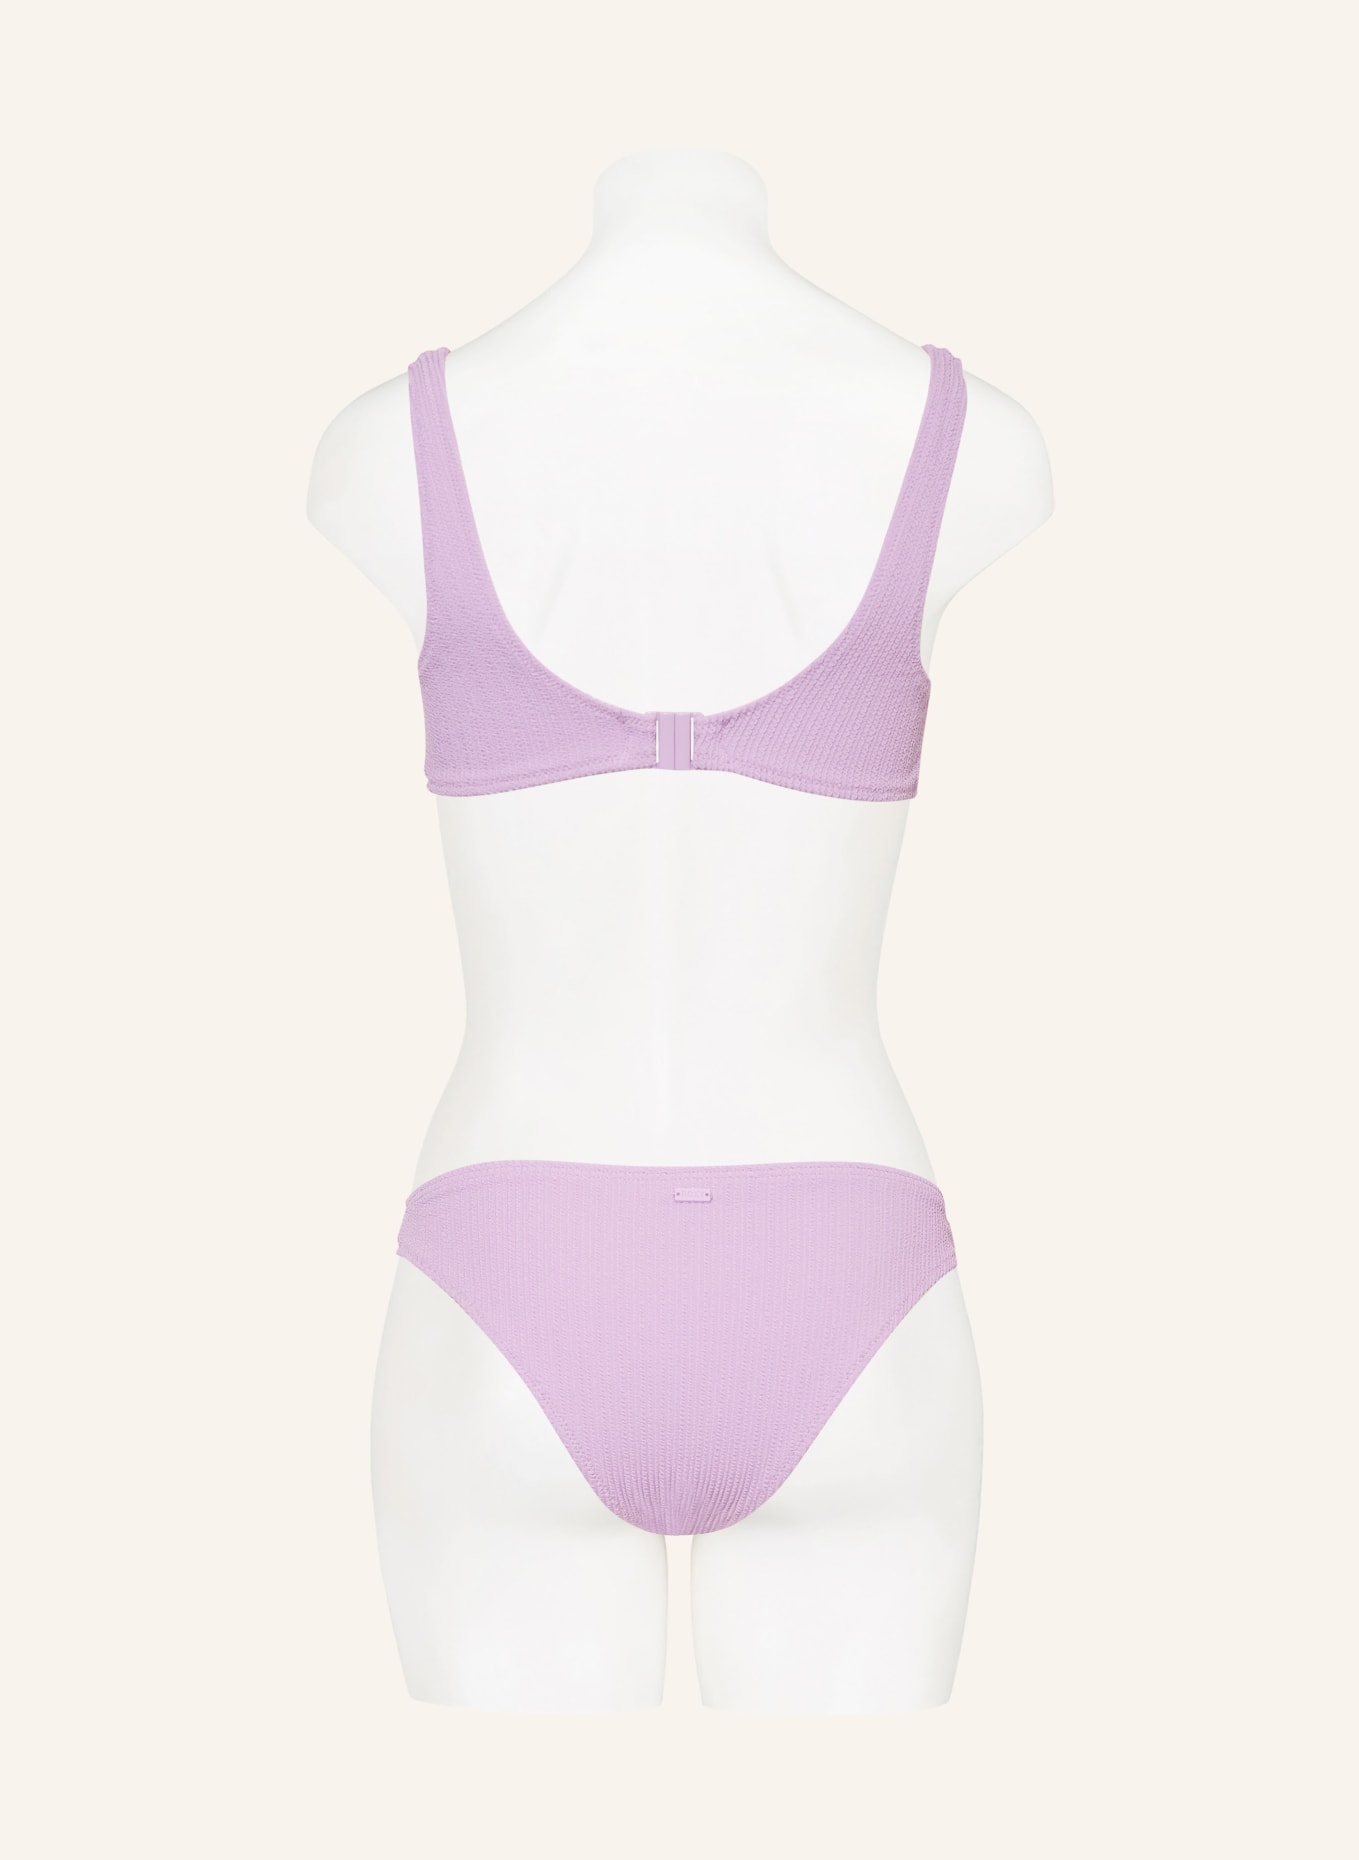 ROXY Bralette bikini top ARUBA, Color: LIGHT PURPLE (Image 3)